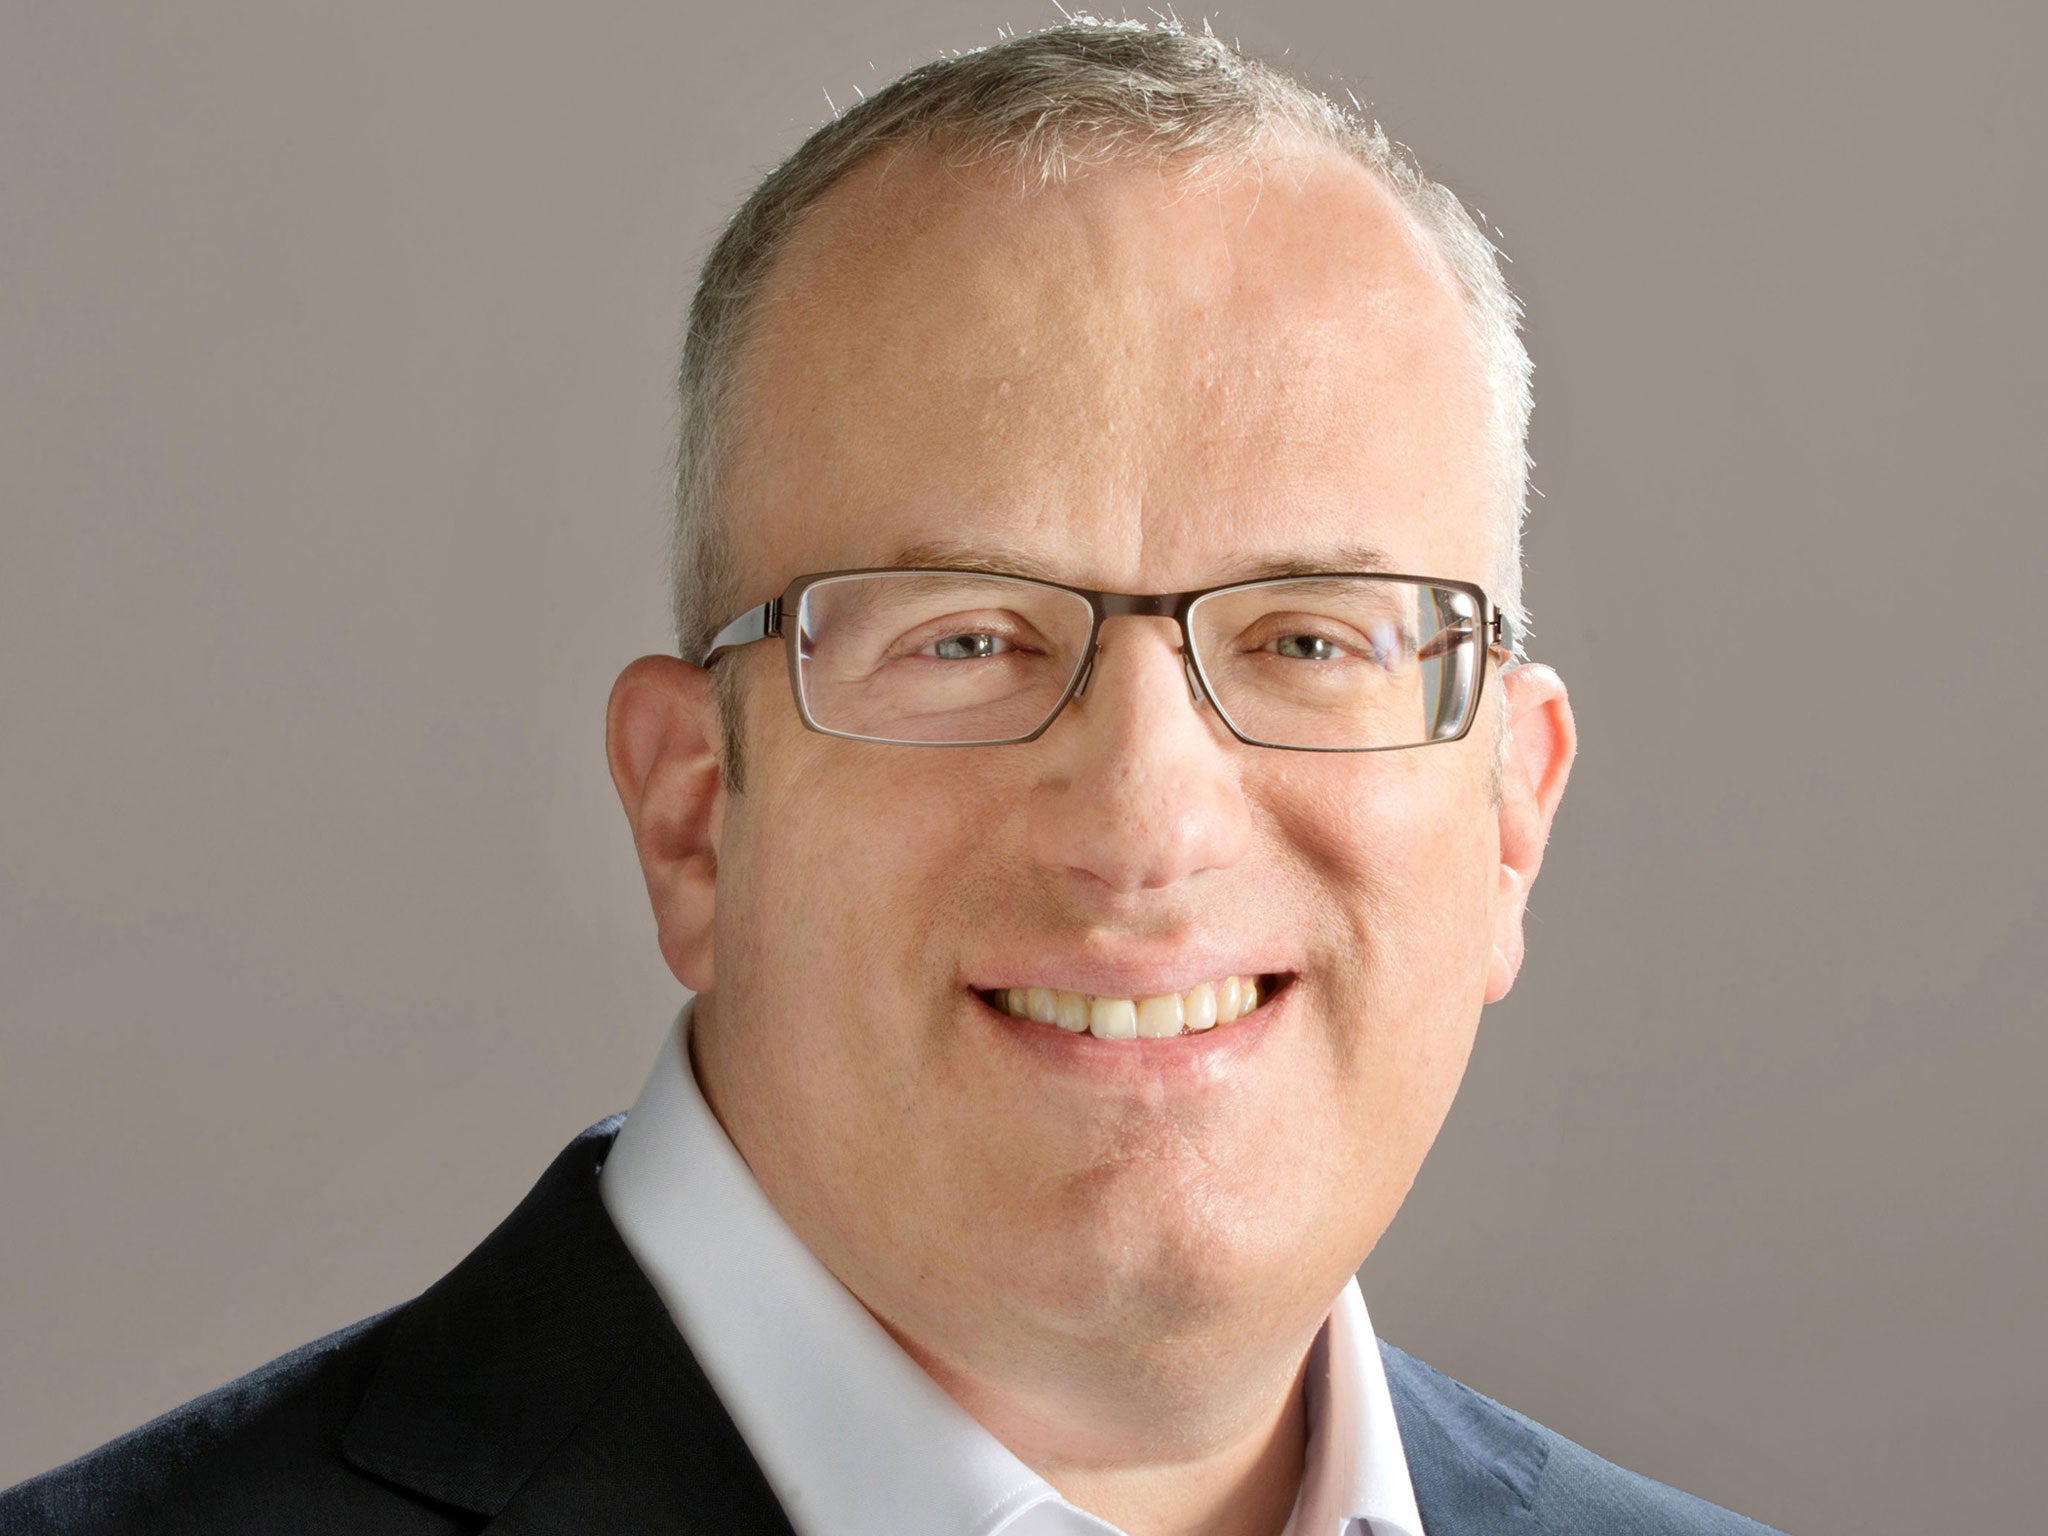 Former Mozilla CEO Brendan Eich